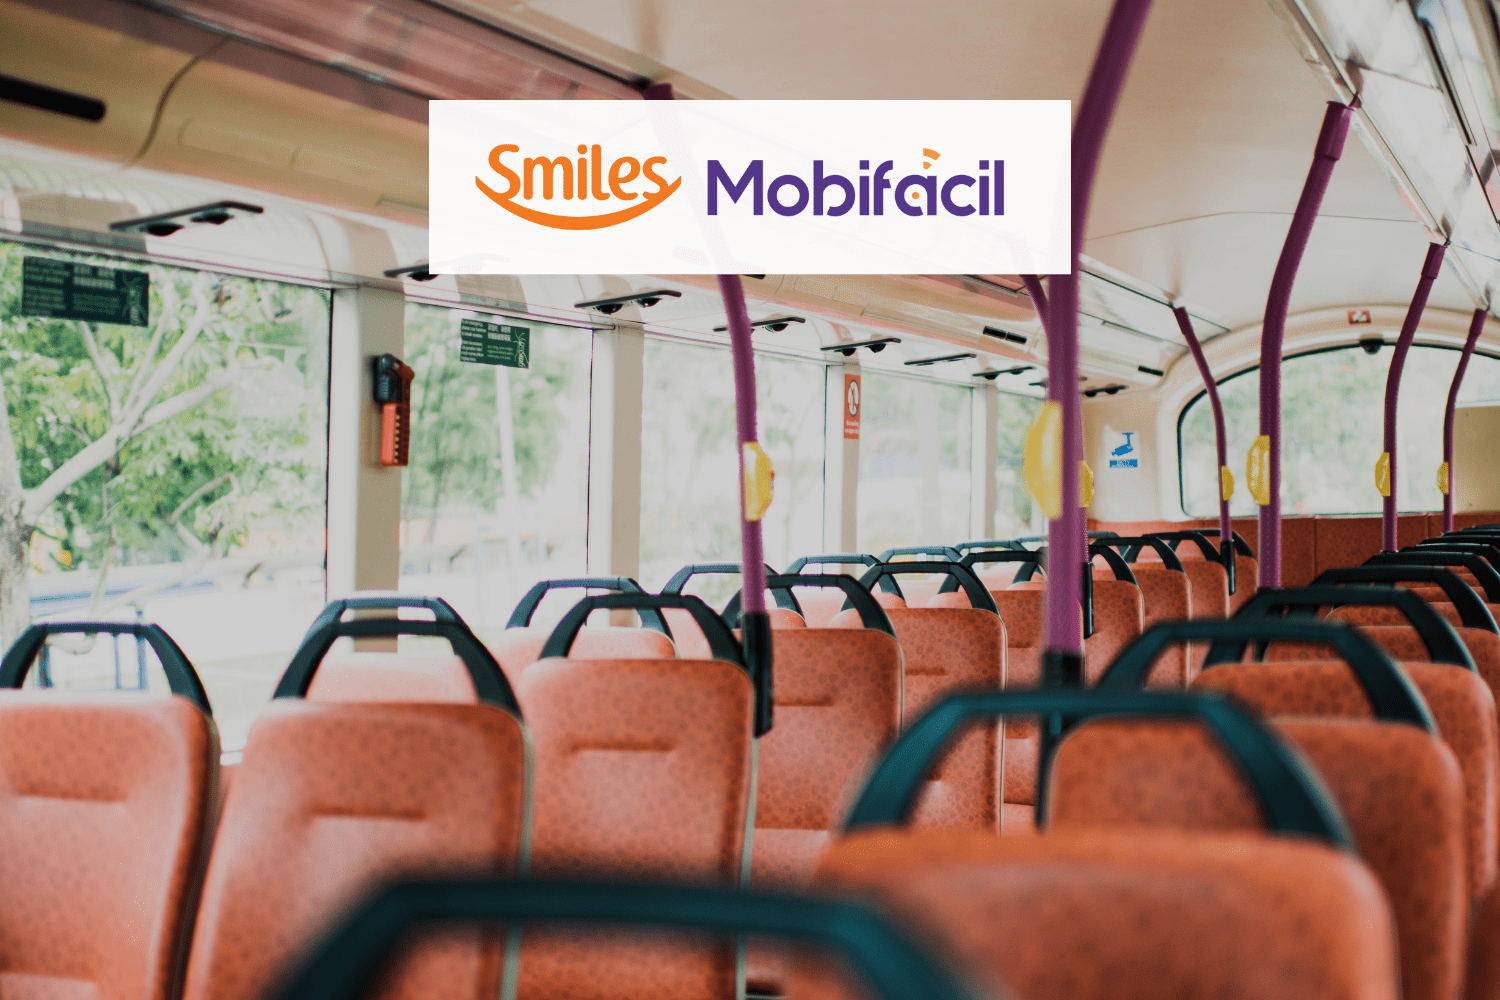 corredor do ônibus com logo Smiles e Mobifácil